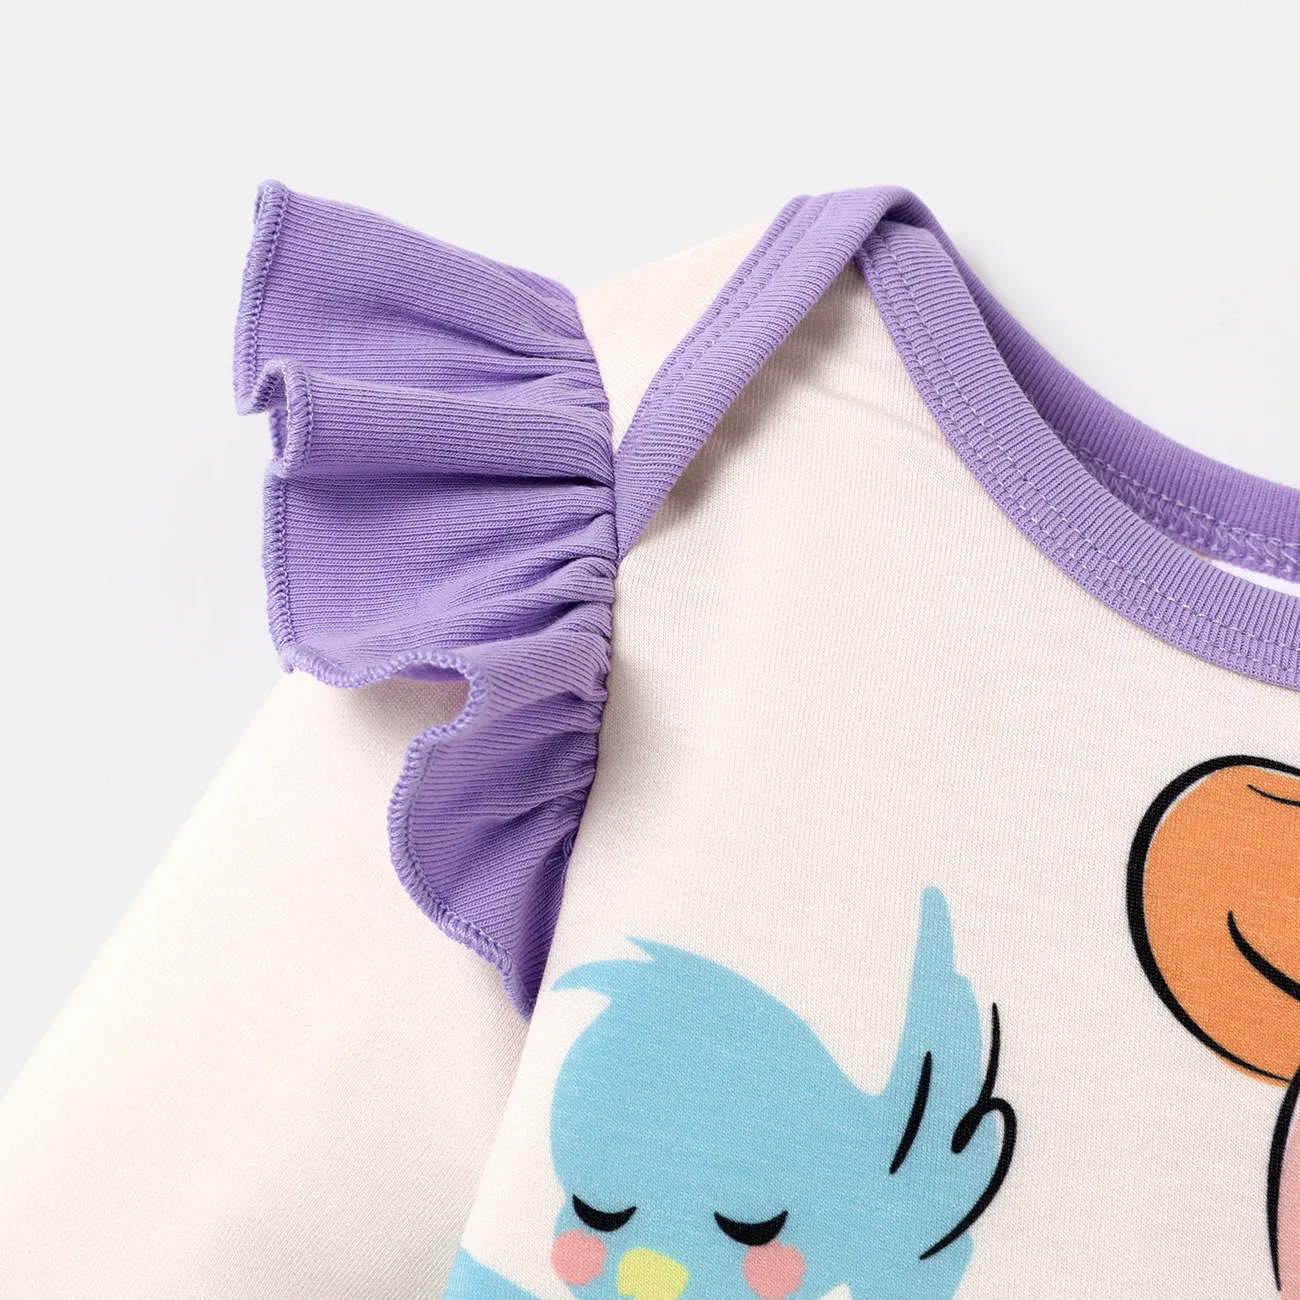 Disney Princess Baby Girl Naia™ Character Print Ruffled Long-sleeve Jumpsuit  Apricot big image 1